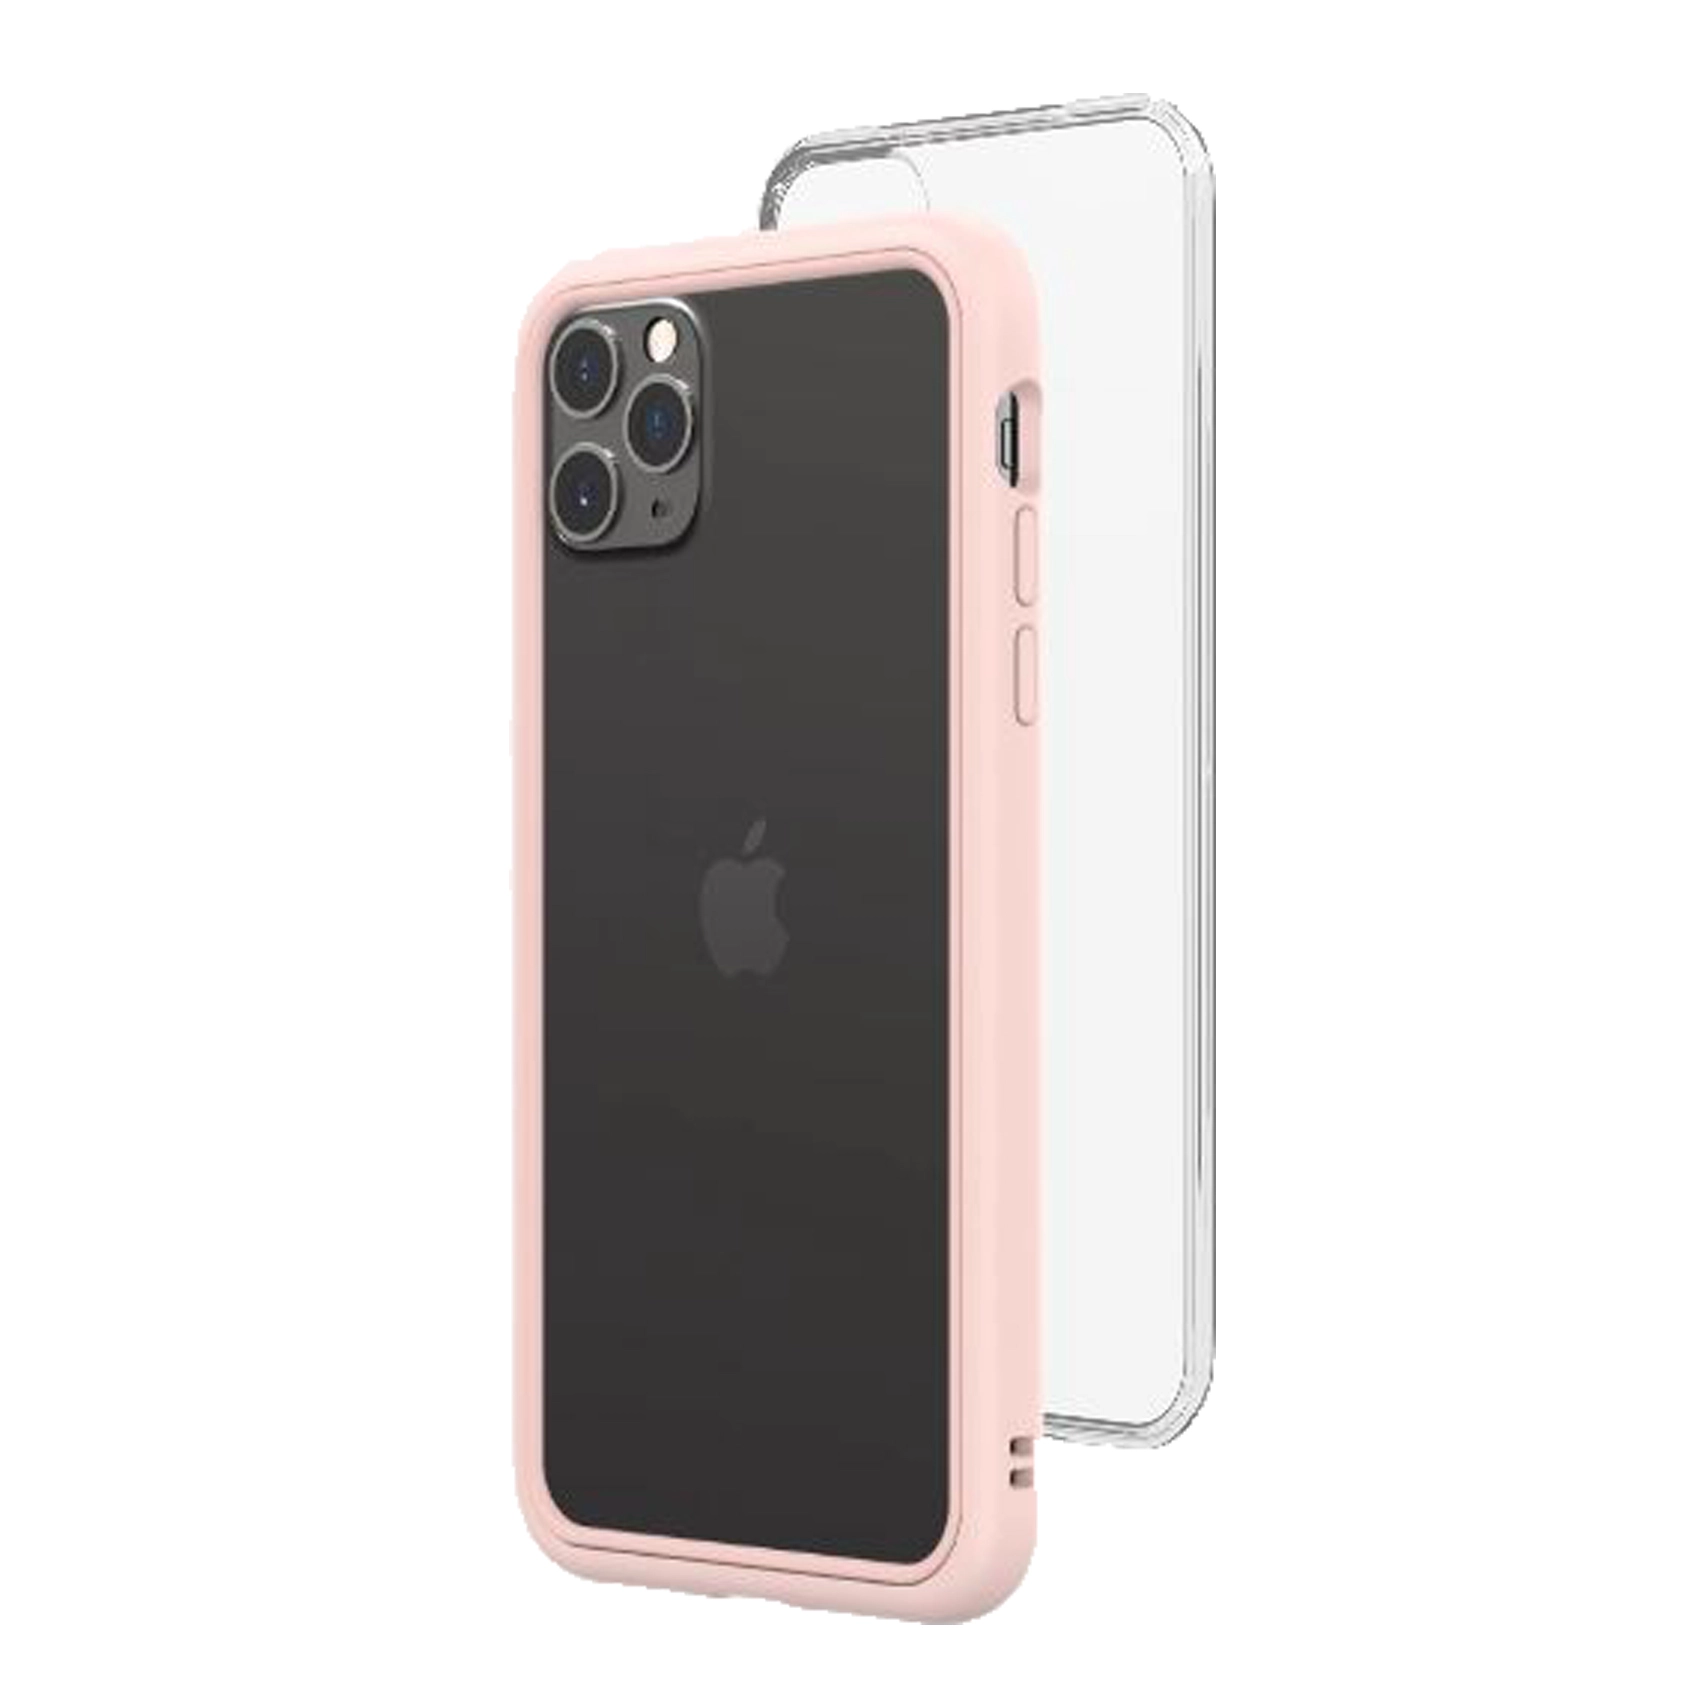 เคส RhinoShield รุ่น Mod NX - iPhone 11 Pro Max - Blush Pink